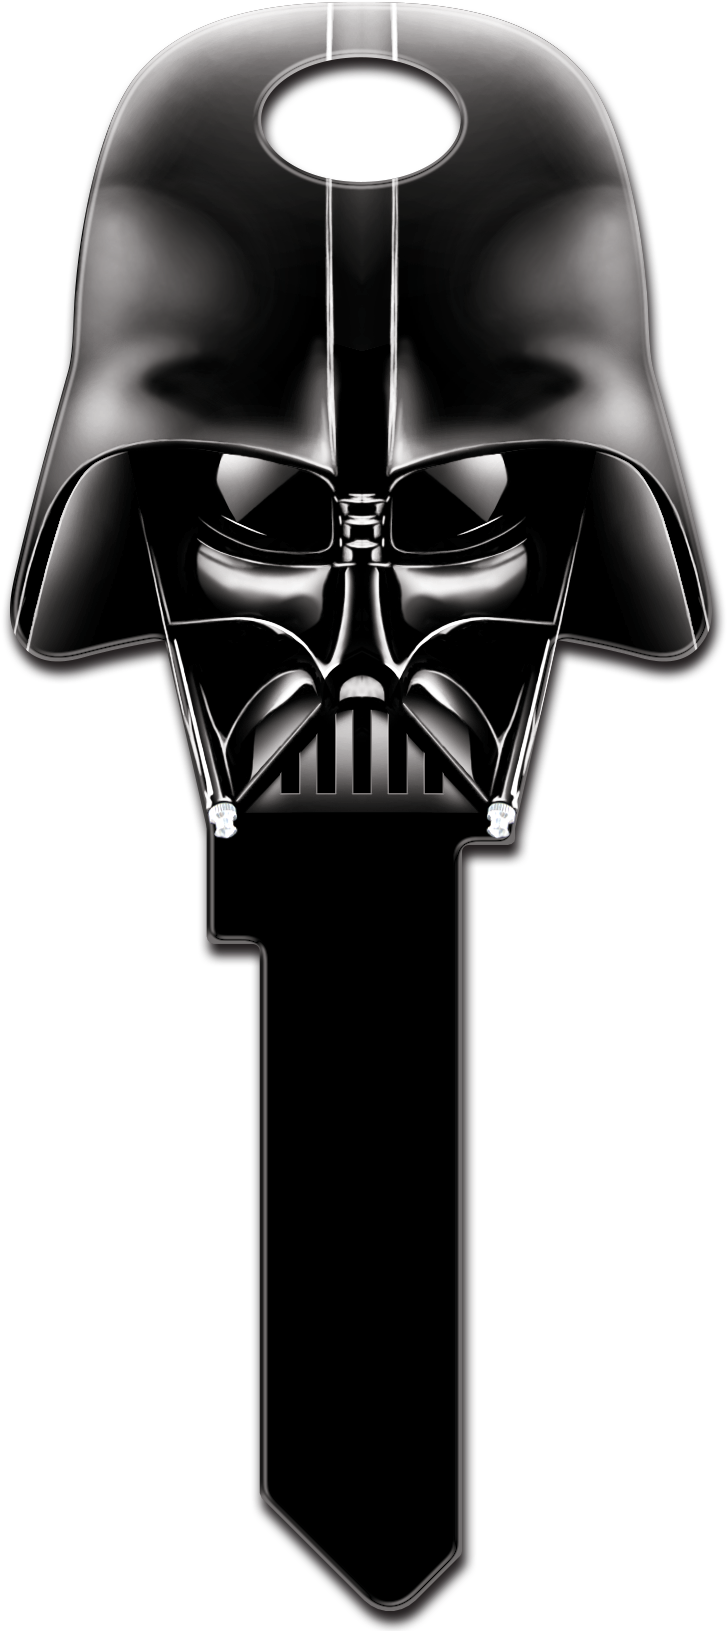 Darth Vader шлем PNG изображения фон